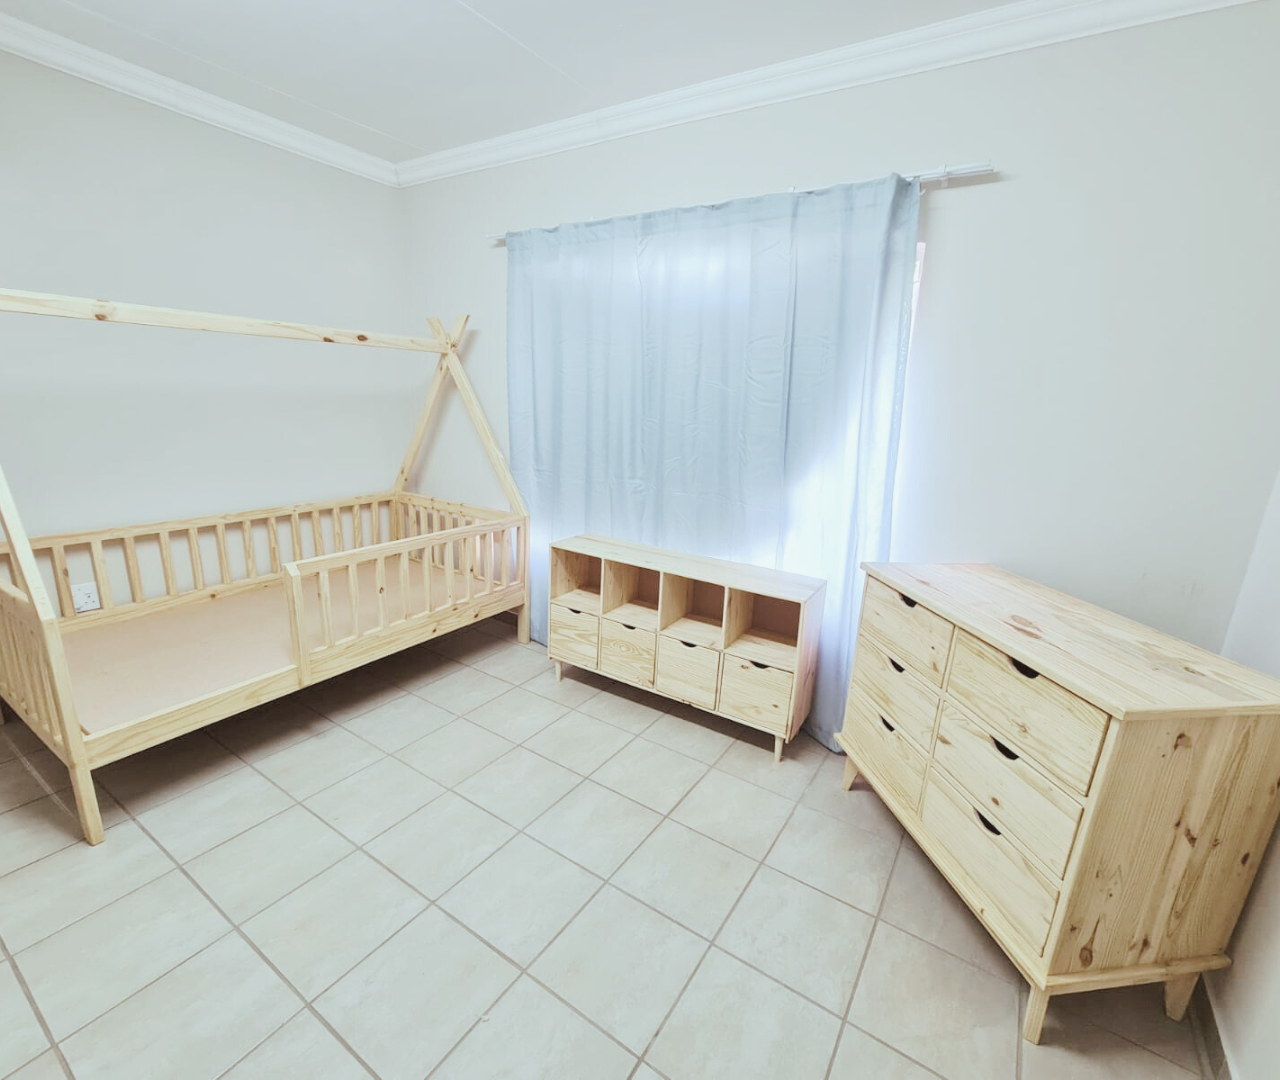 Wooden kids furniture for bedroom